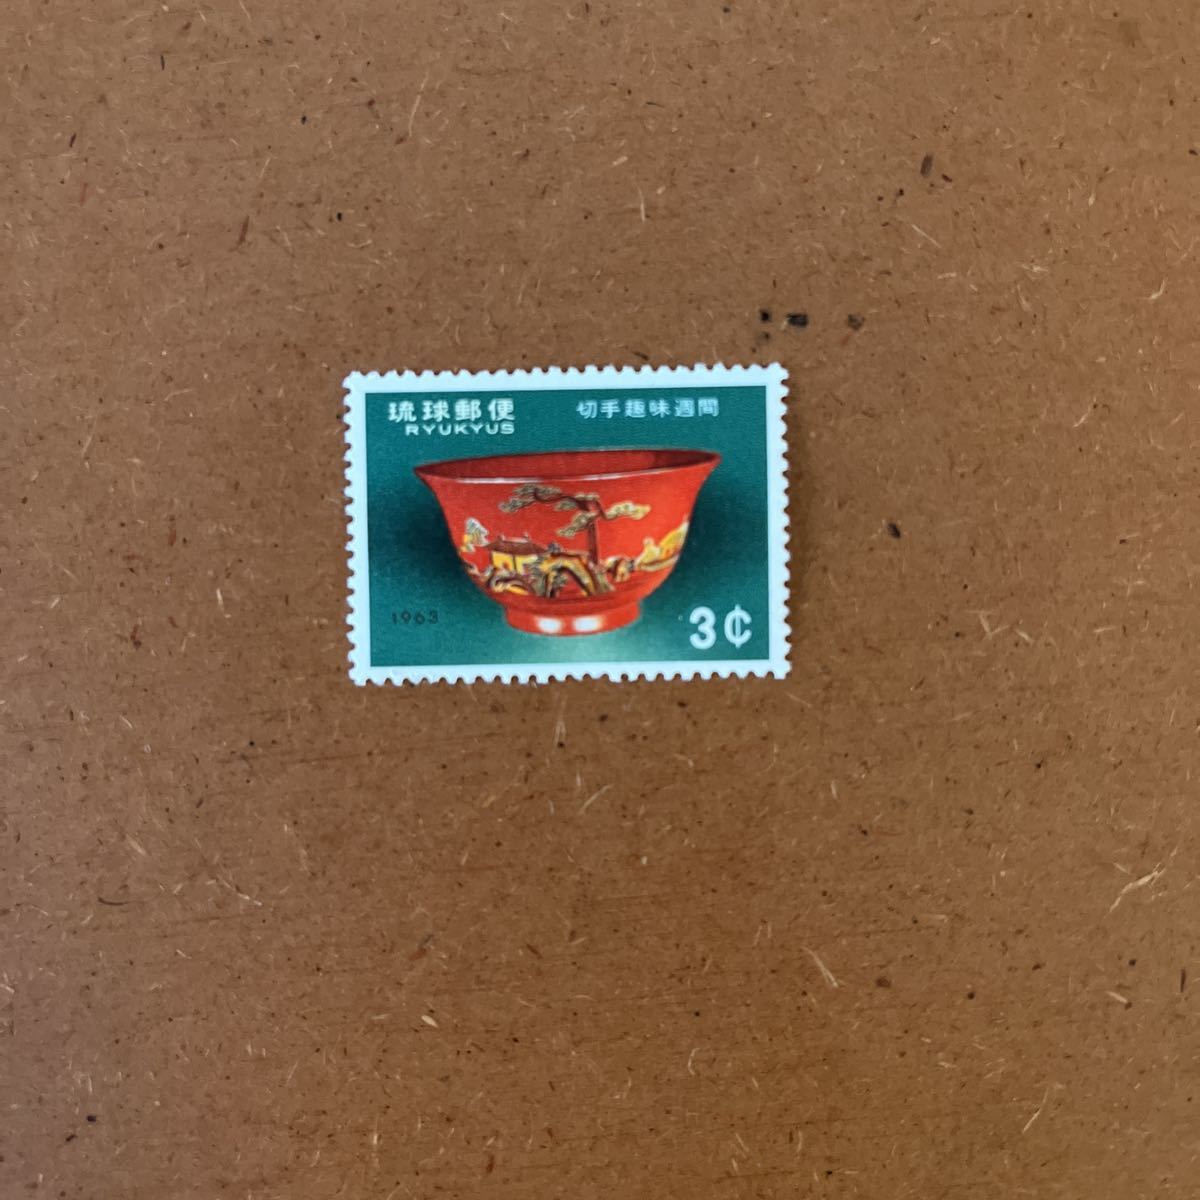 琉球切手・1963. 切手趣味週間・ついきんわん・3¢の画像1